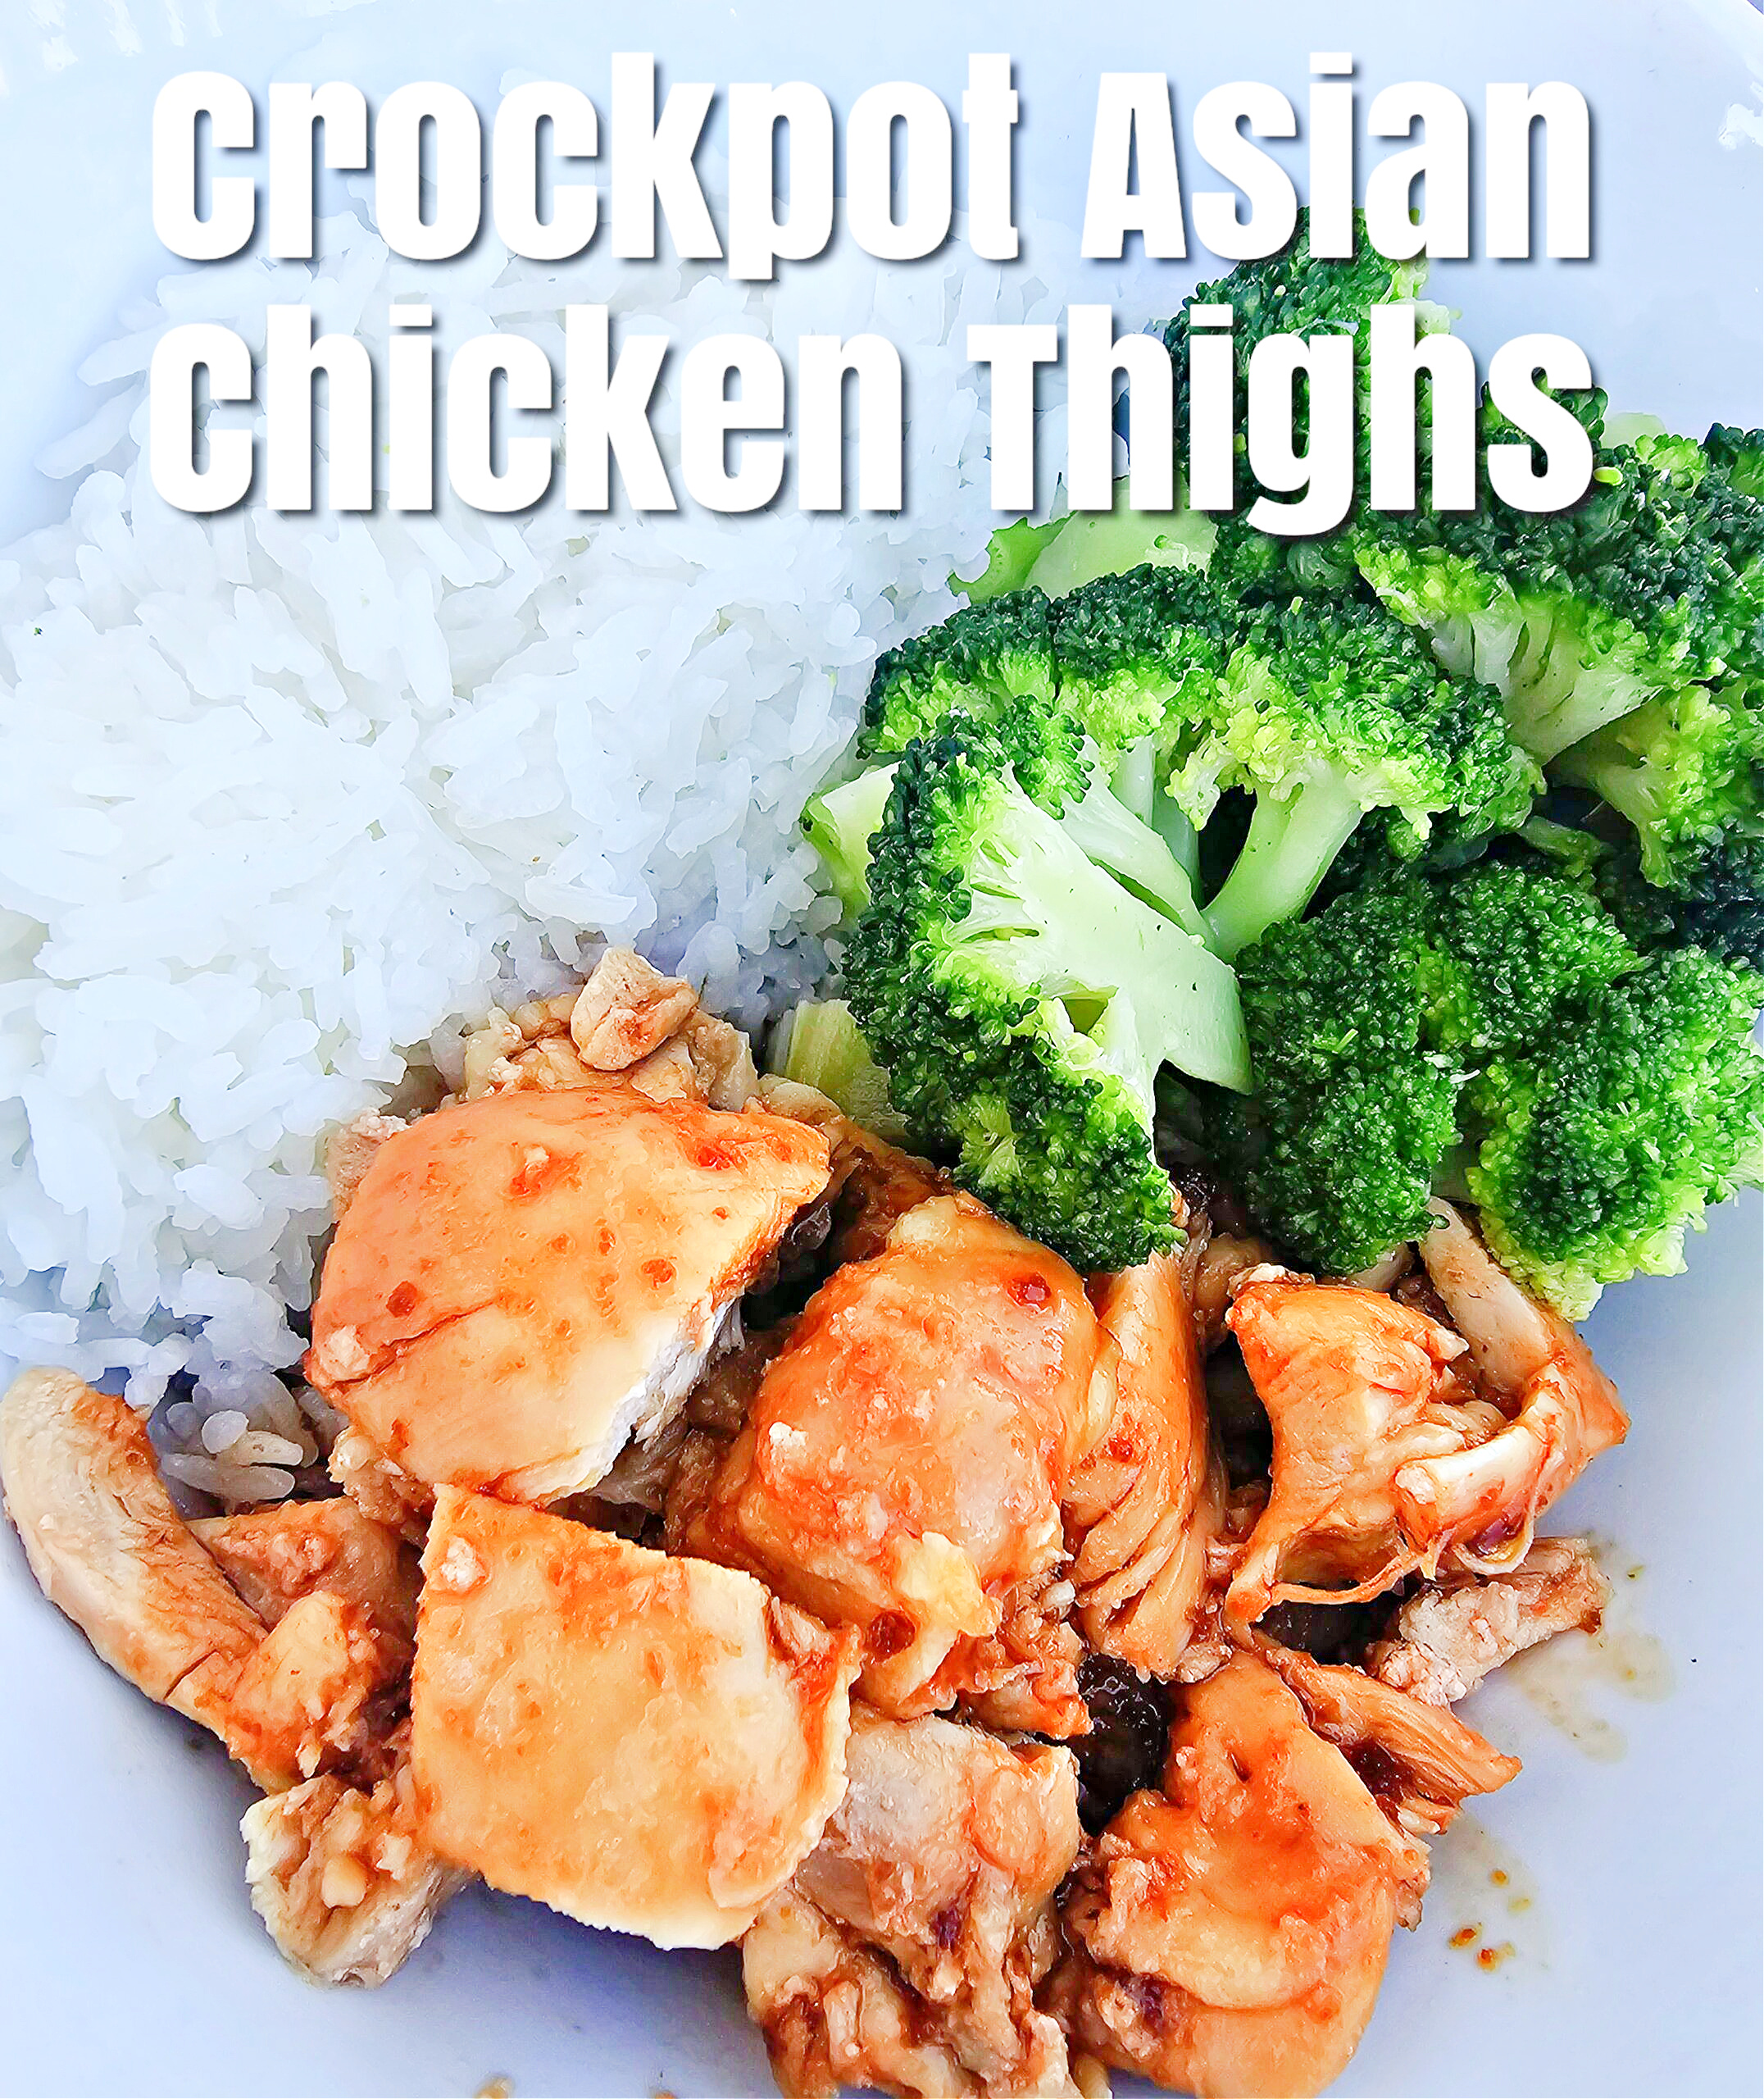 Crockpot Asian Chicken Thighs